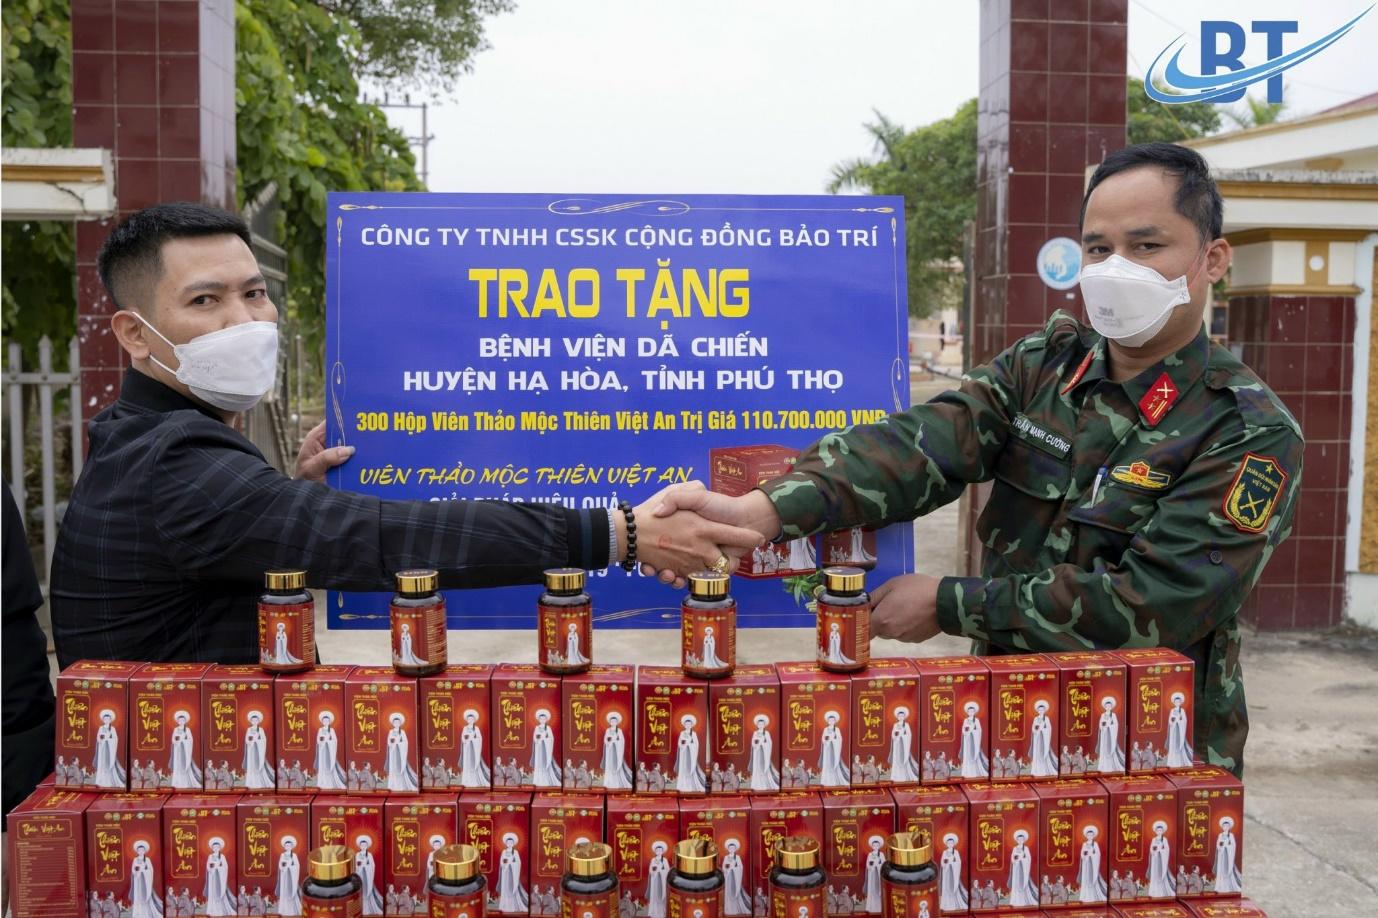 Bệnh viện dã chiến huyện Hà Hòa, tỉnh Phú Thọ cũng được trao tặng sản phẩm Viên thảo dược Thiên Việt An